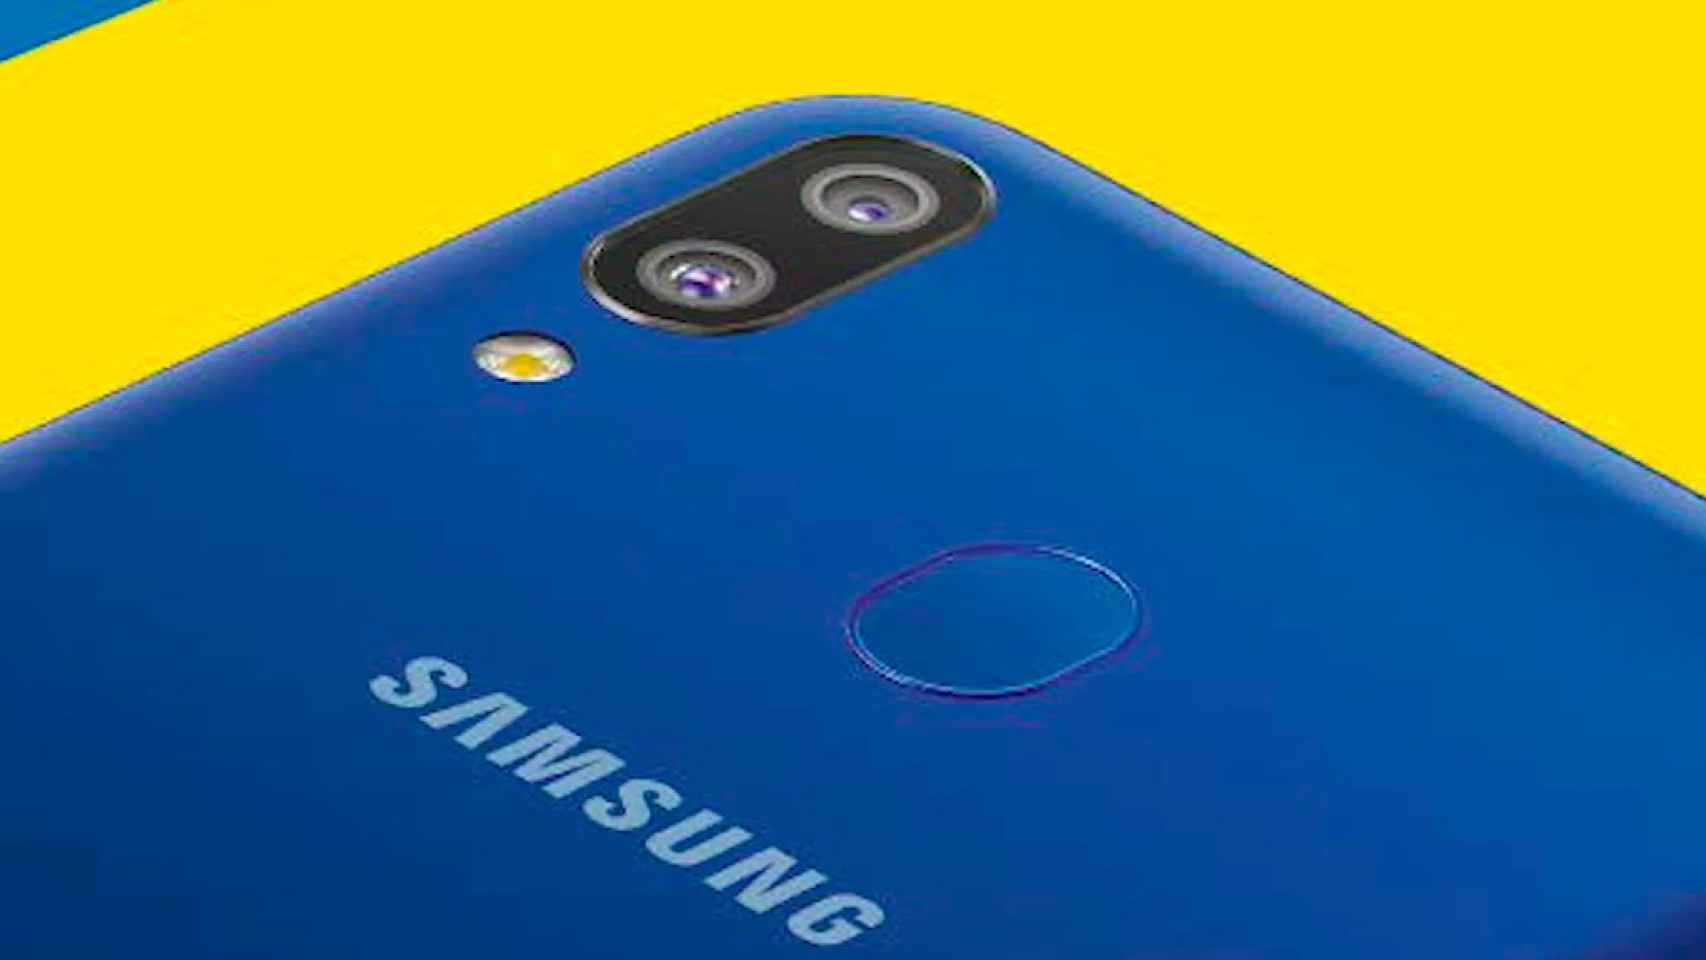 Samsung Galaxy A30: características de un móvil para todos los públicos